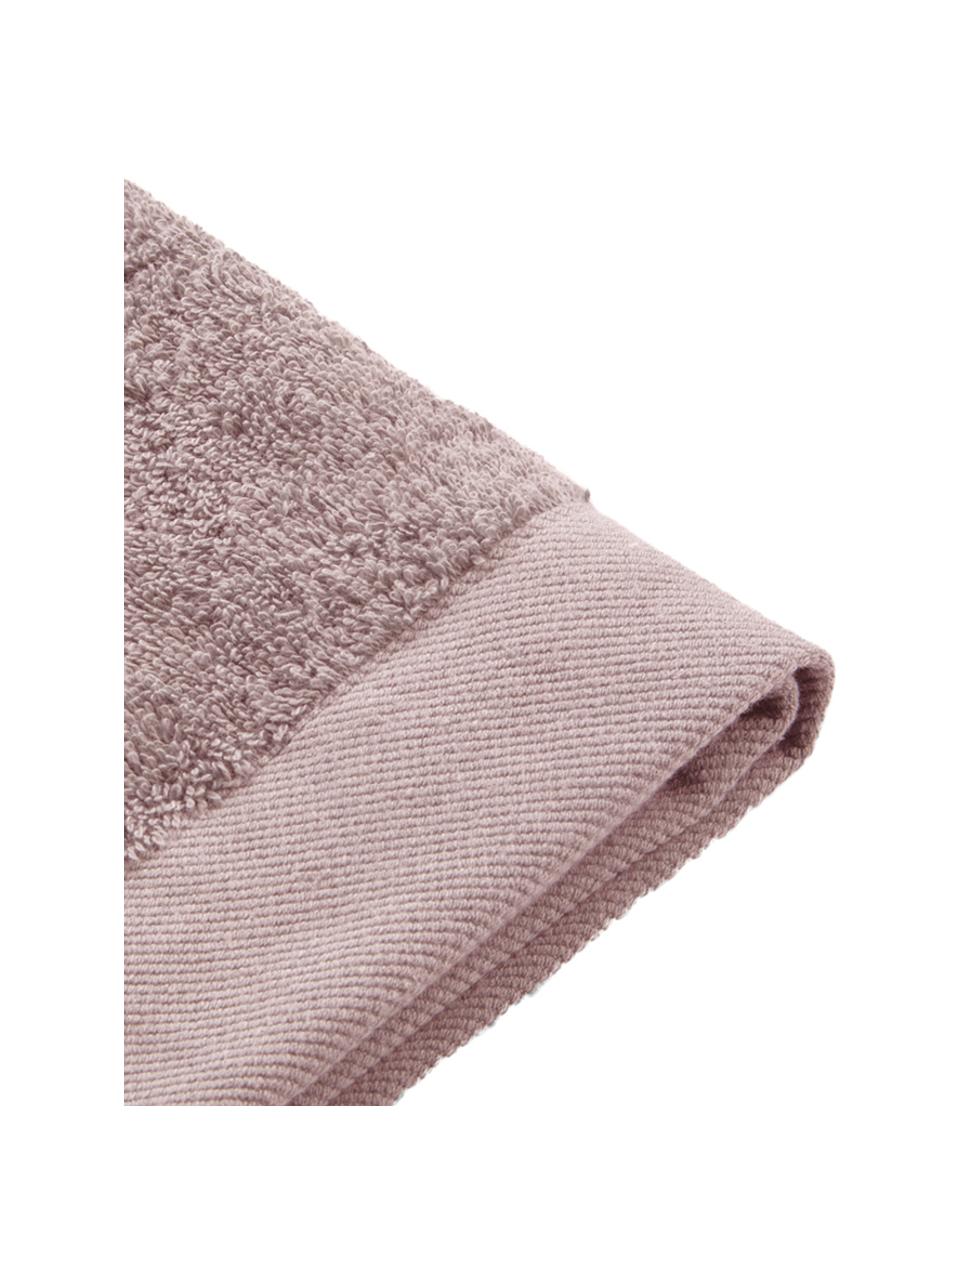 Handtuch Blend in verschiedenen Größen, aus recyceltem Baumwoll-Mix, Puderrosa, Duschtuch